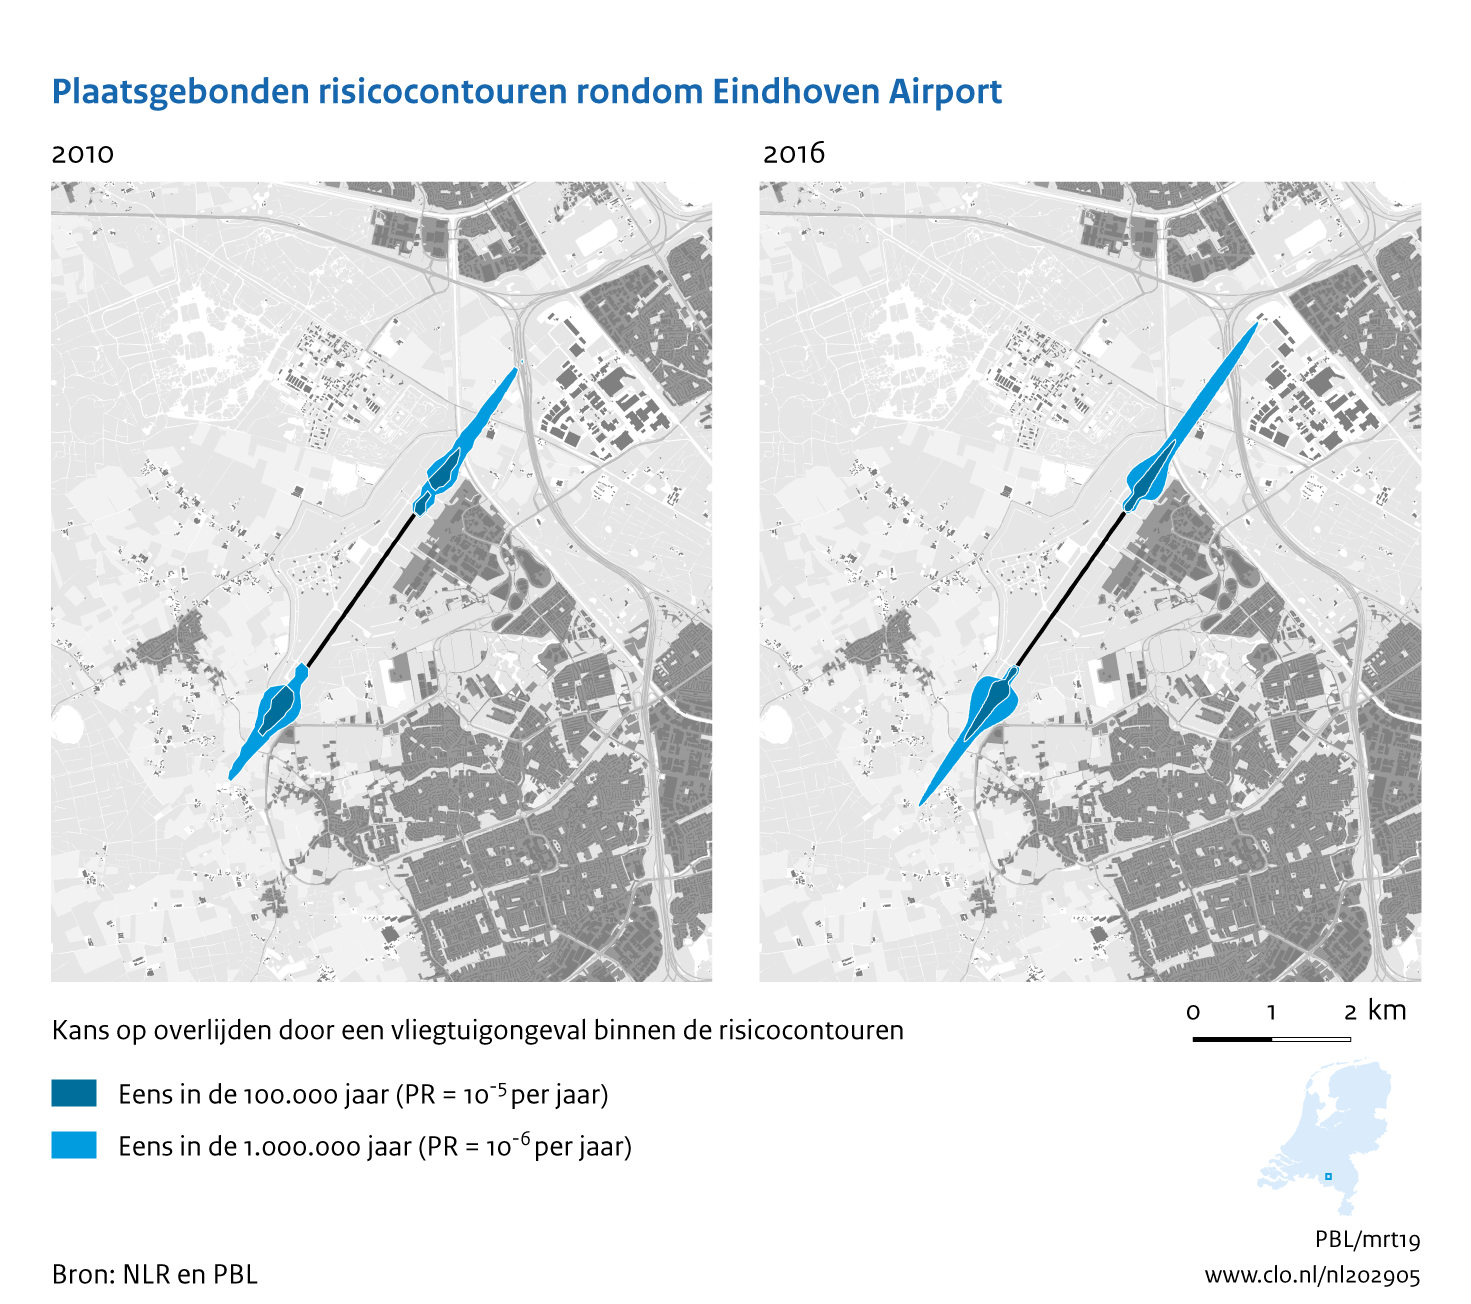 Figuur Plaatsgebonden risicocontouren rondom Eindhoven Airport, 2010-2016. In de rest van de tekst wordt deze figuur uitgebreider uitgelegd.